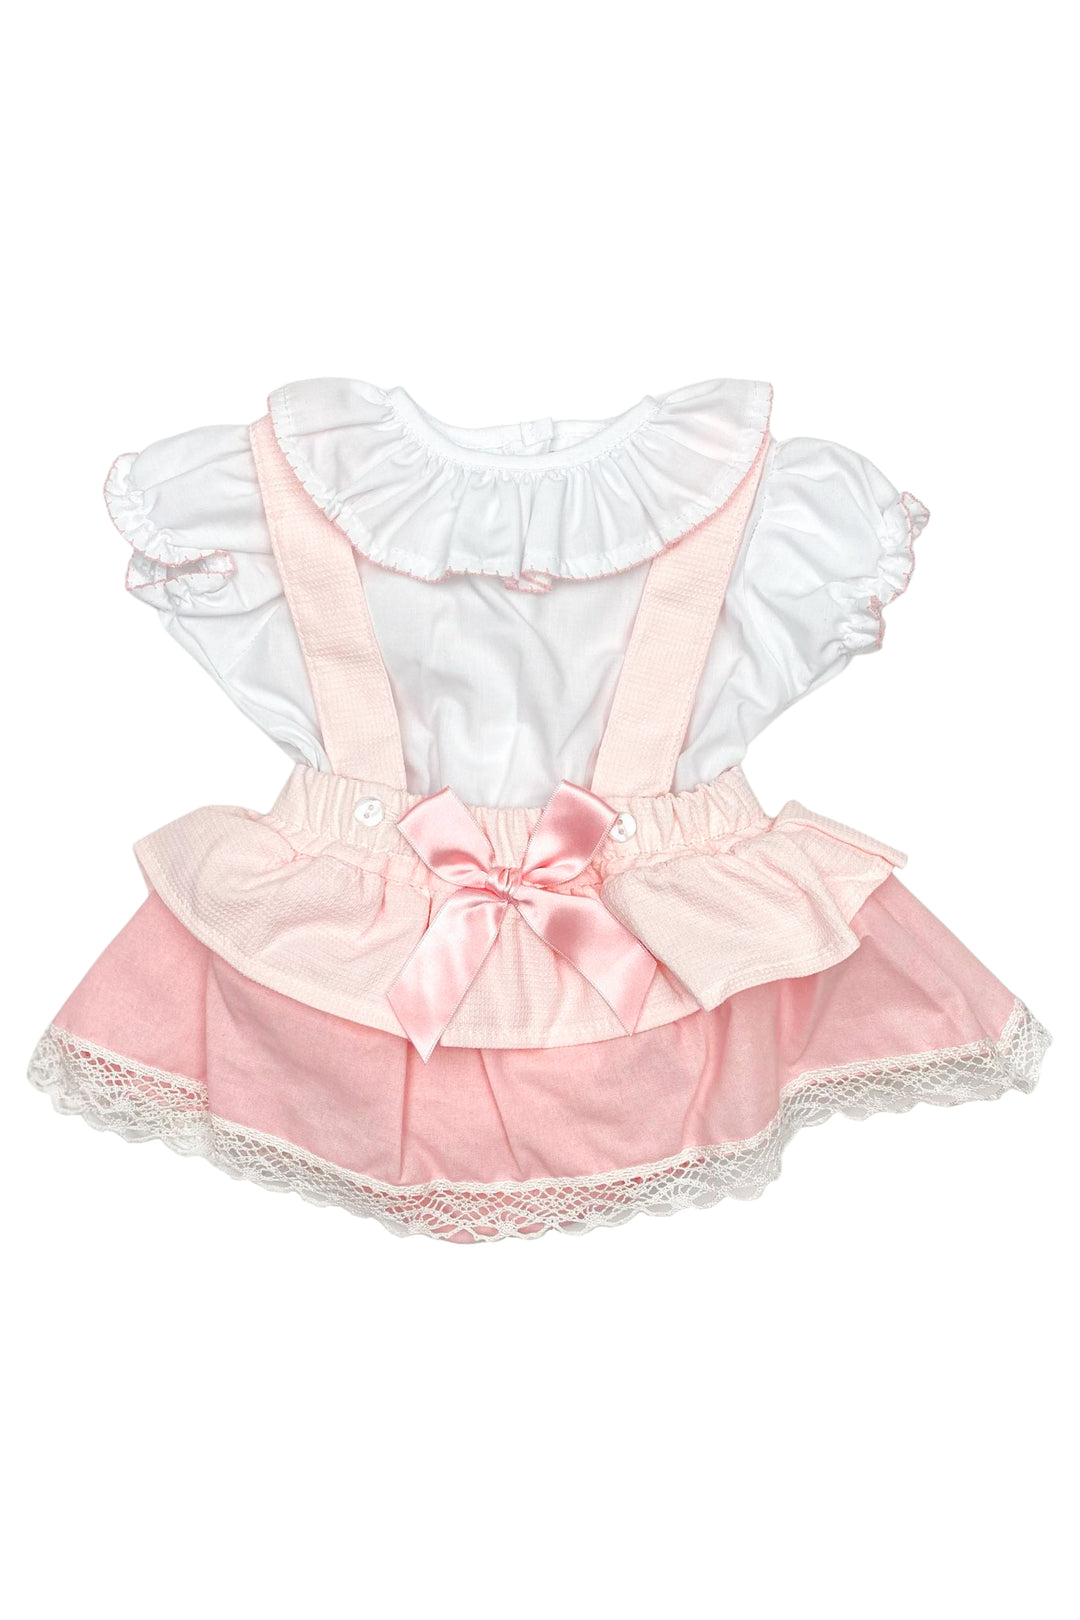 Little Nosh "Chloe" Blouse & Pink Bloomer Skirt | Millie and John